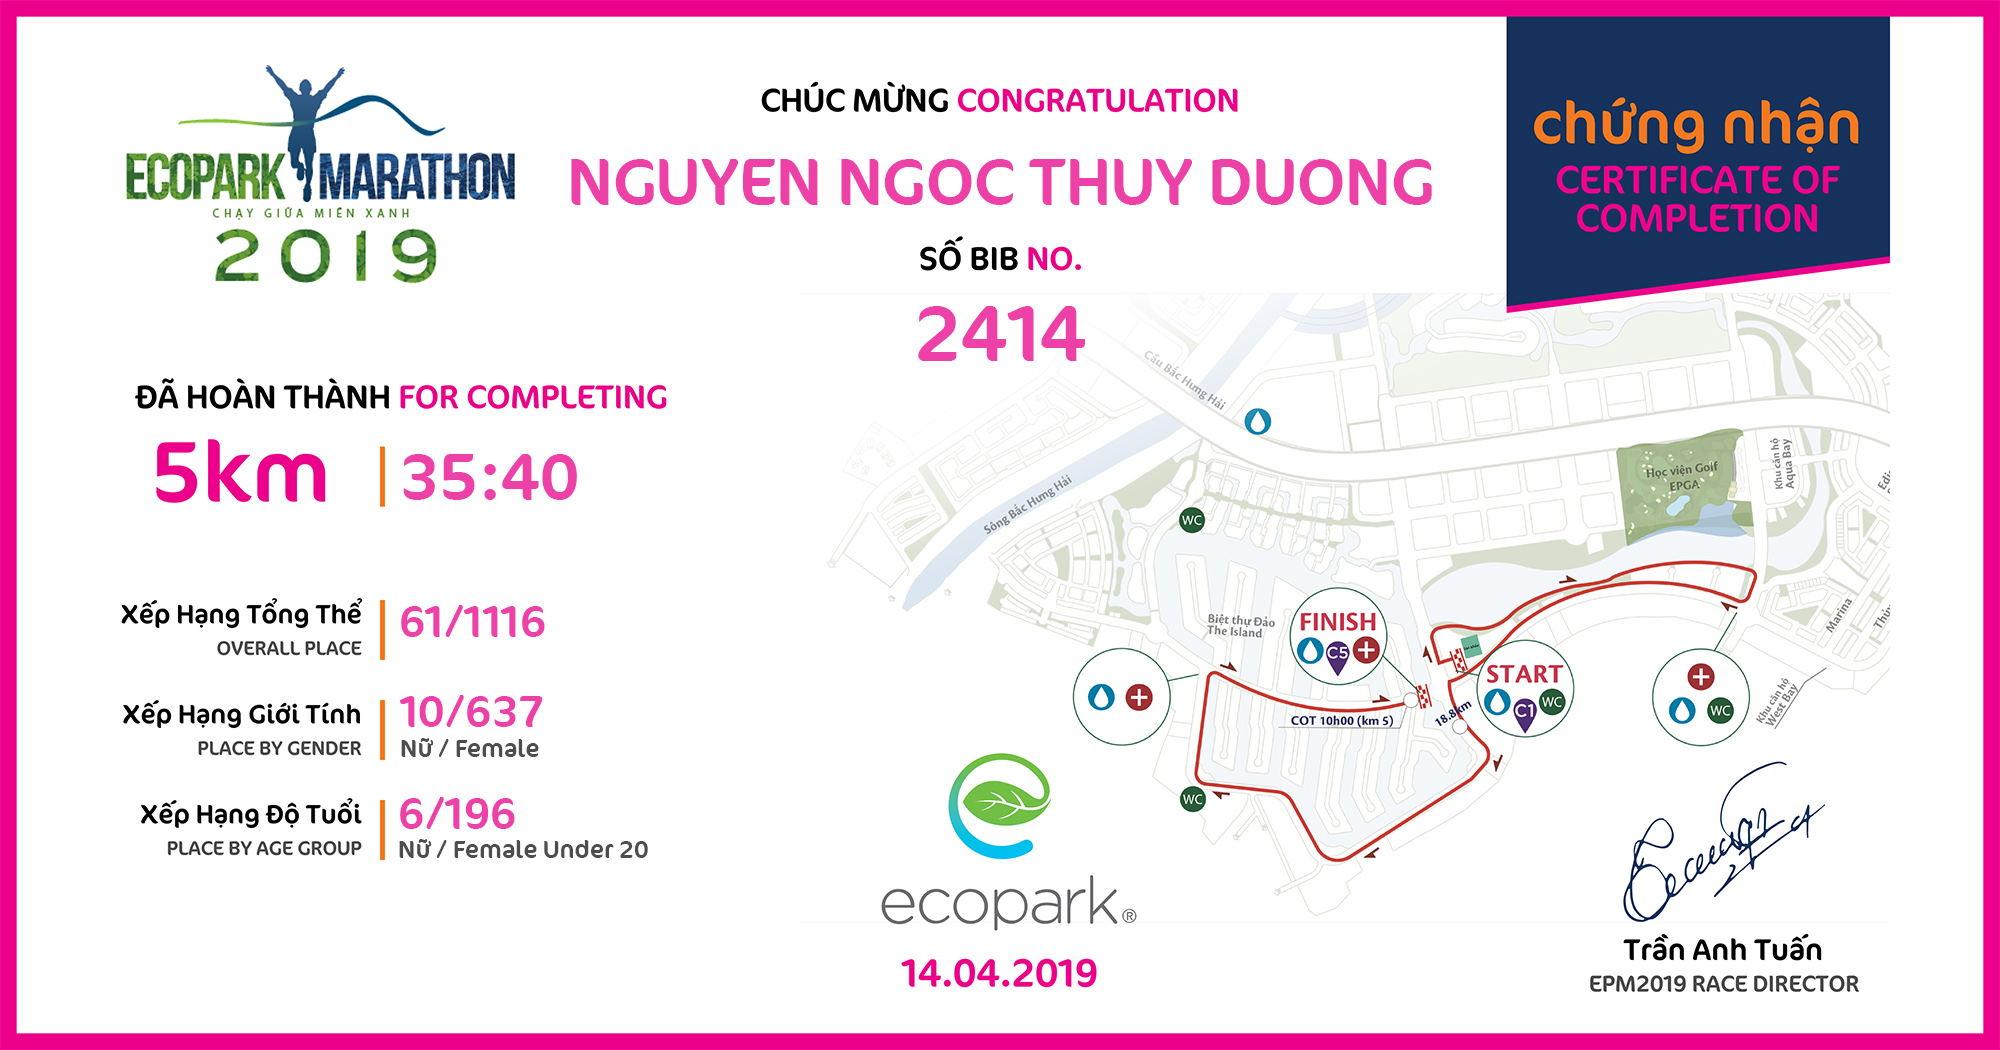 2414 - Nguyen Ngoc Thuy Duong